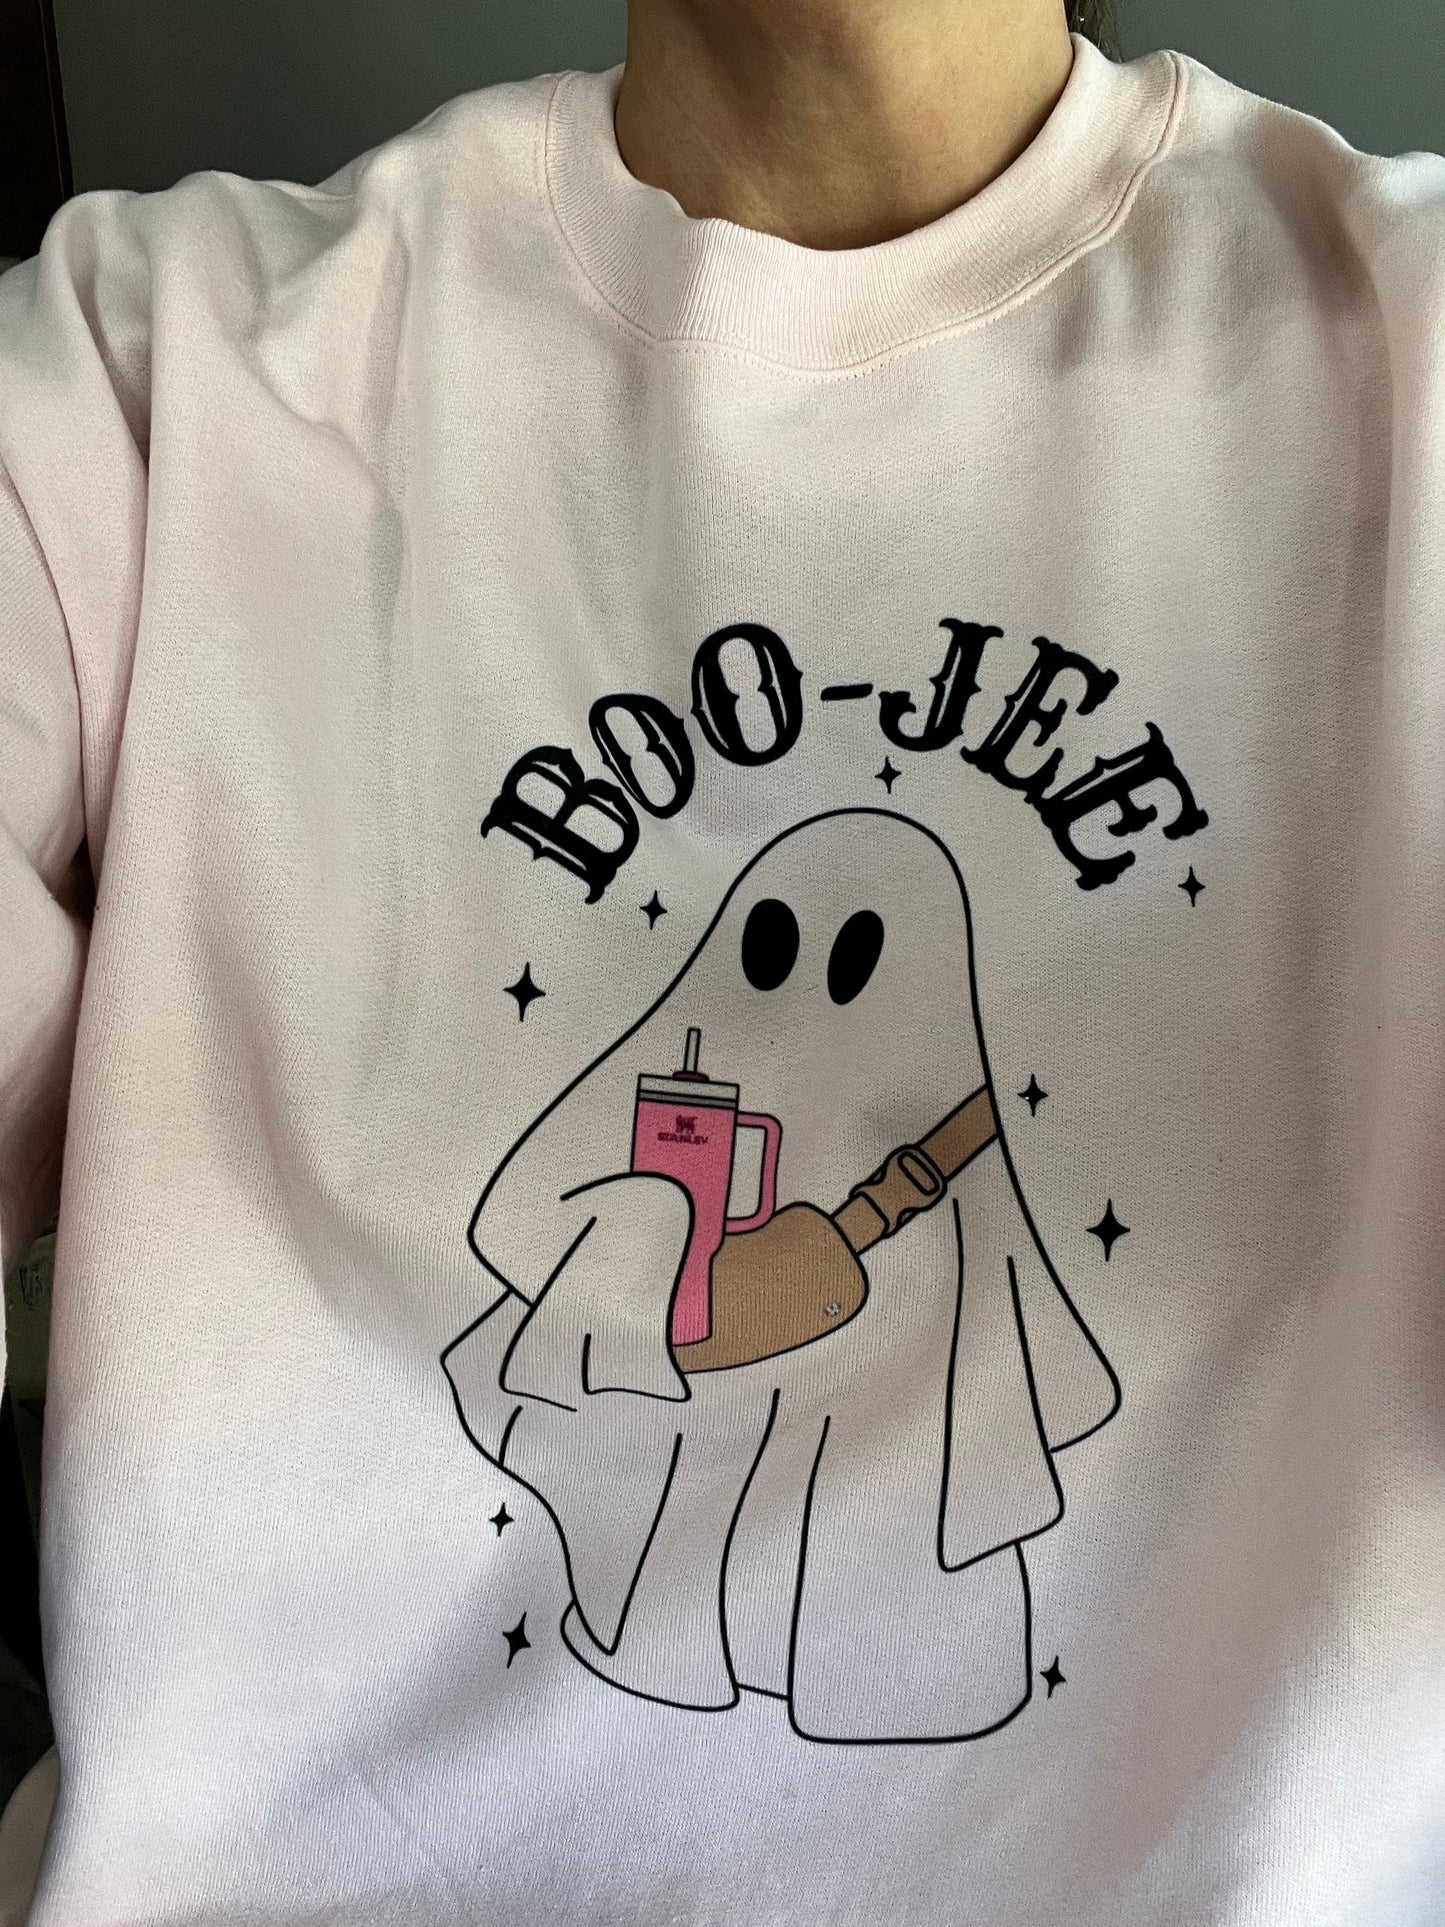 Boo-Jee